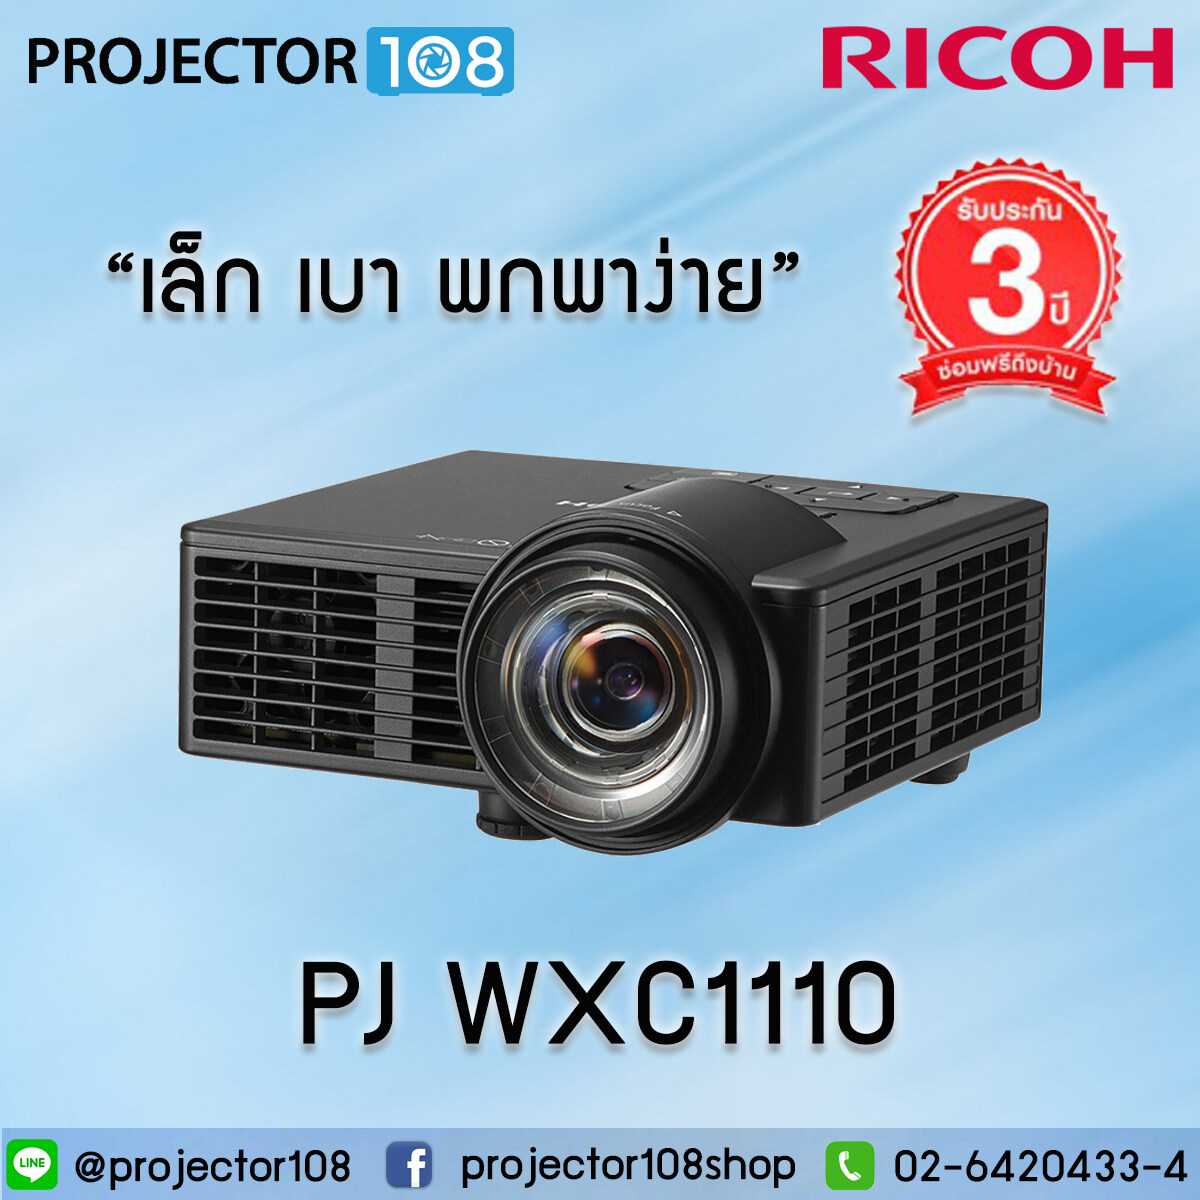 RICOH PJ WXC1110 Projector